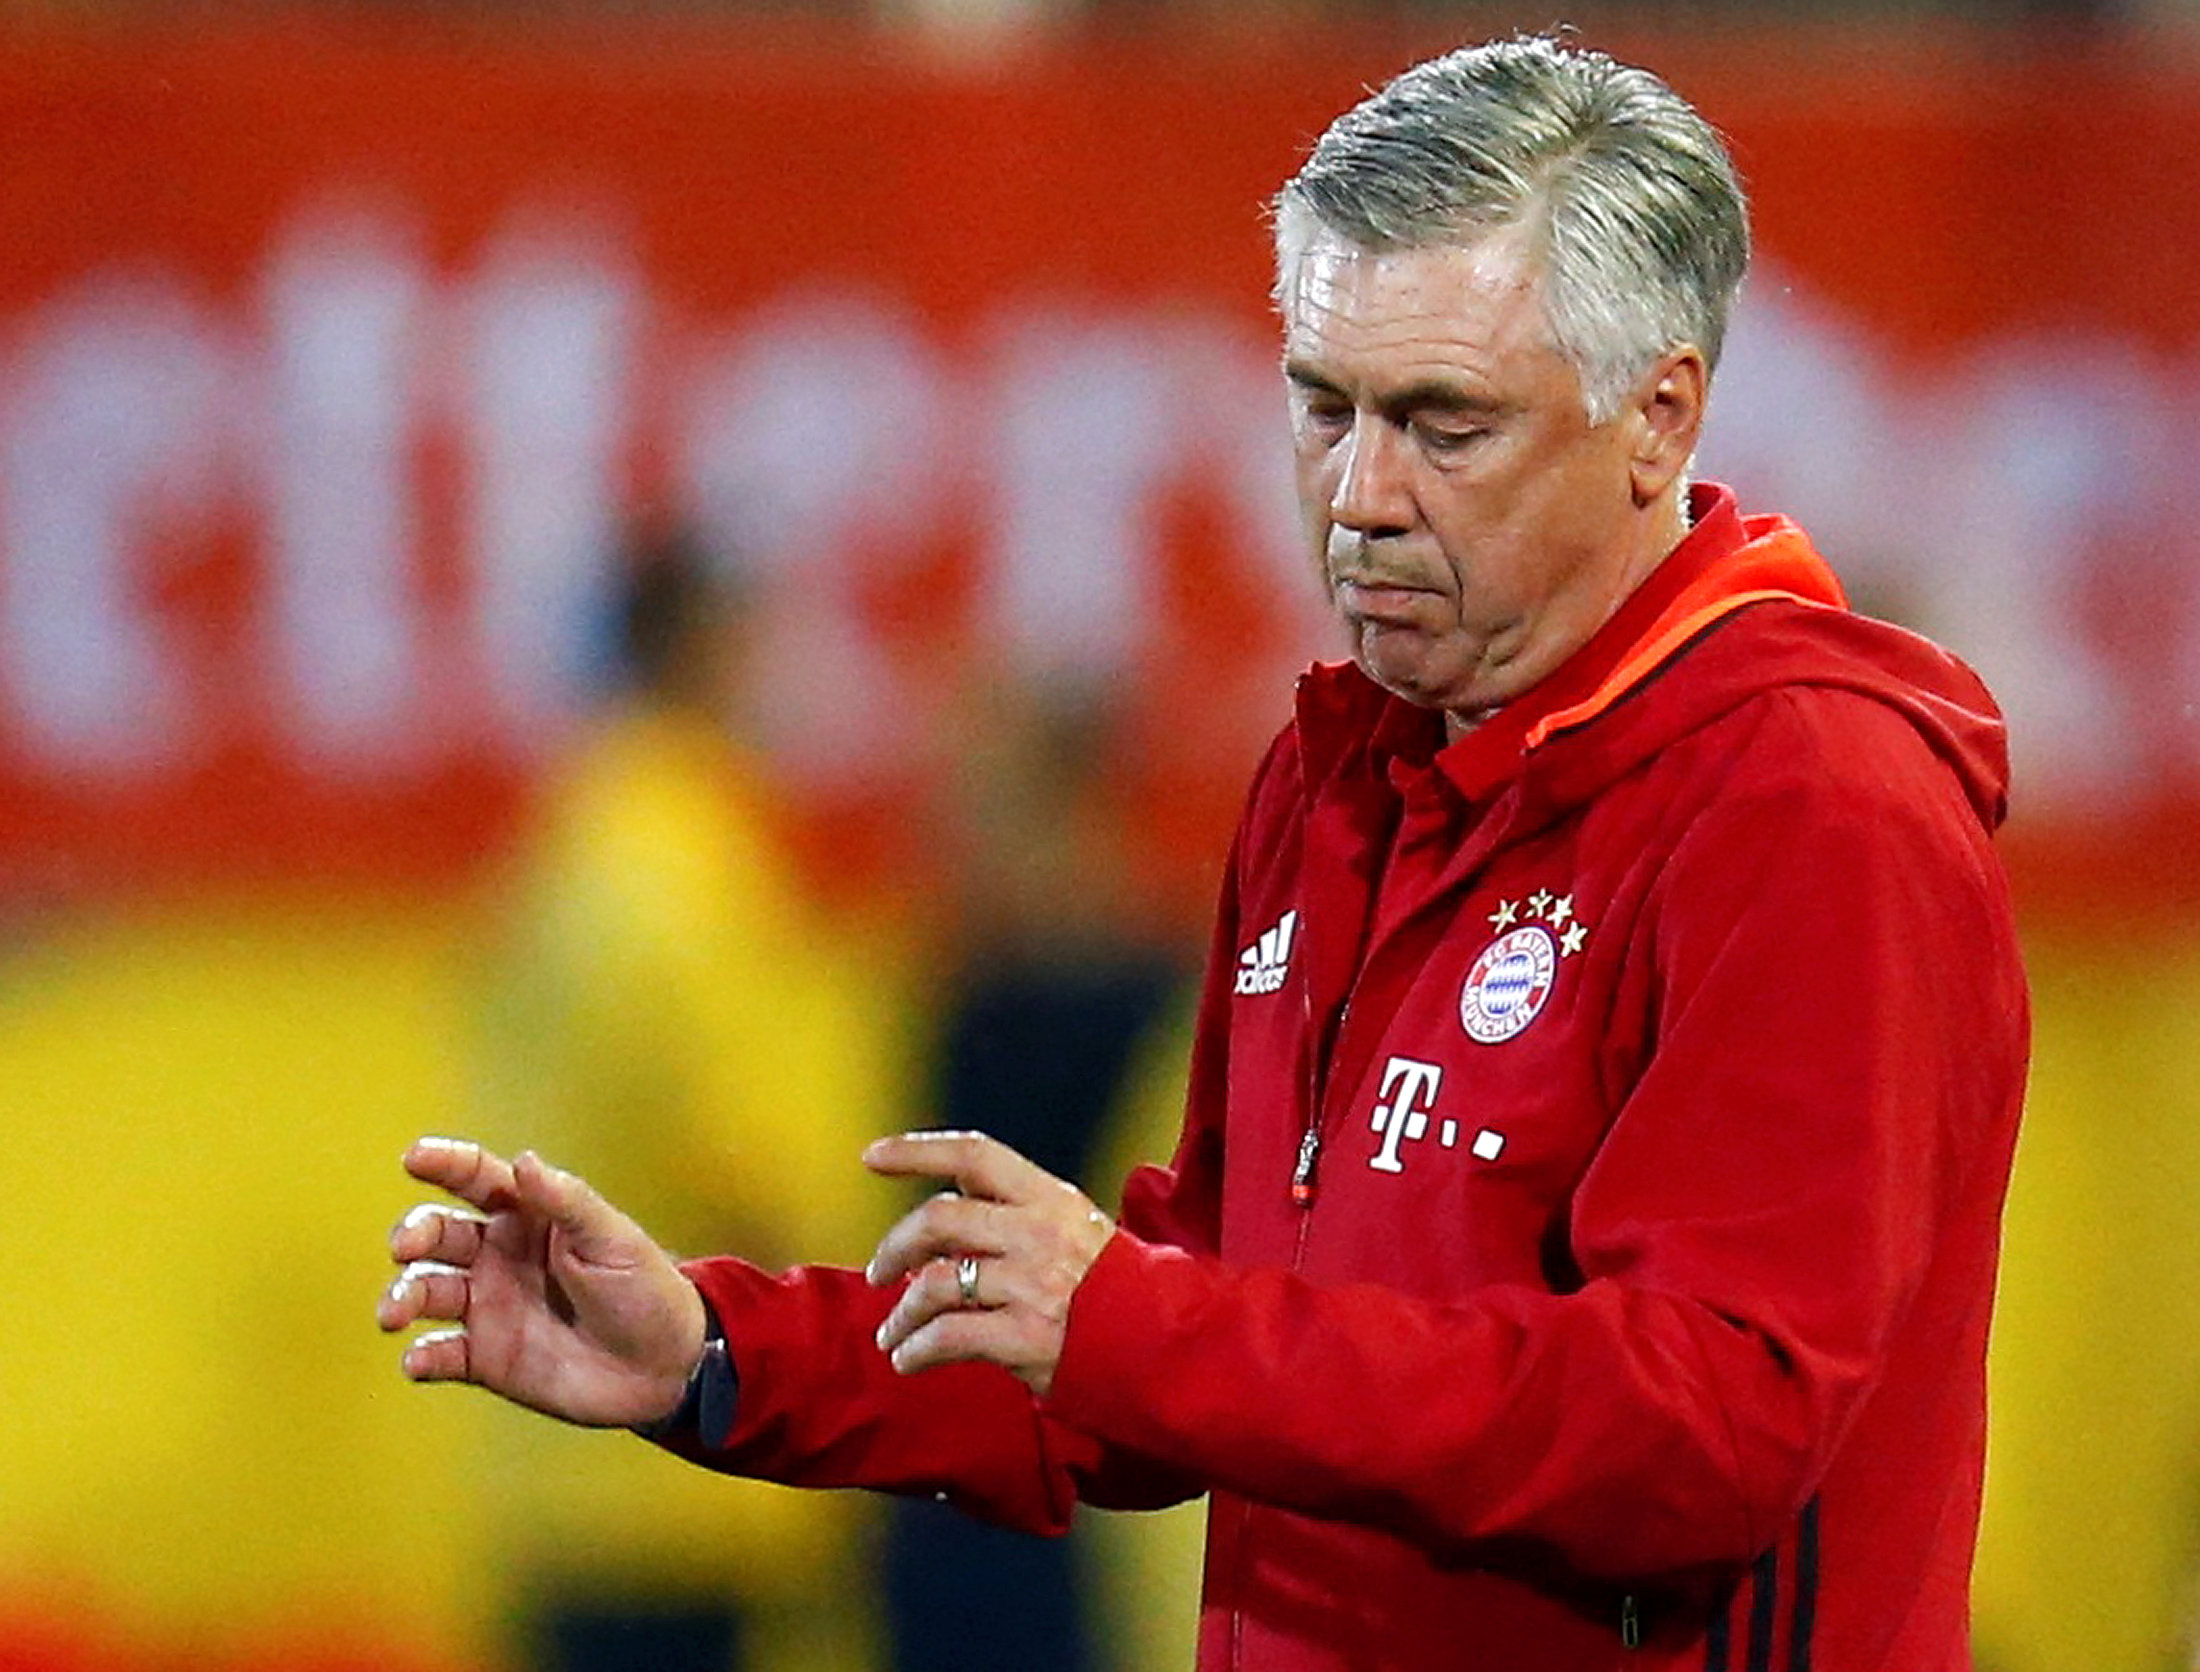 HLV Ancelotti chưa gặp trở ngại nào tại Bayern Munich. Ảnh: REUTERS